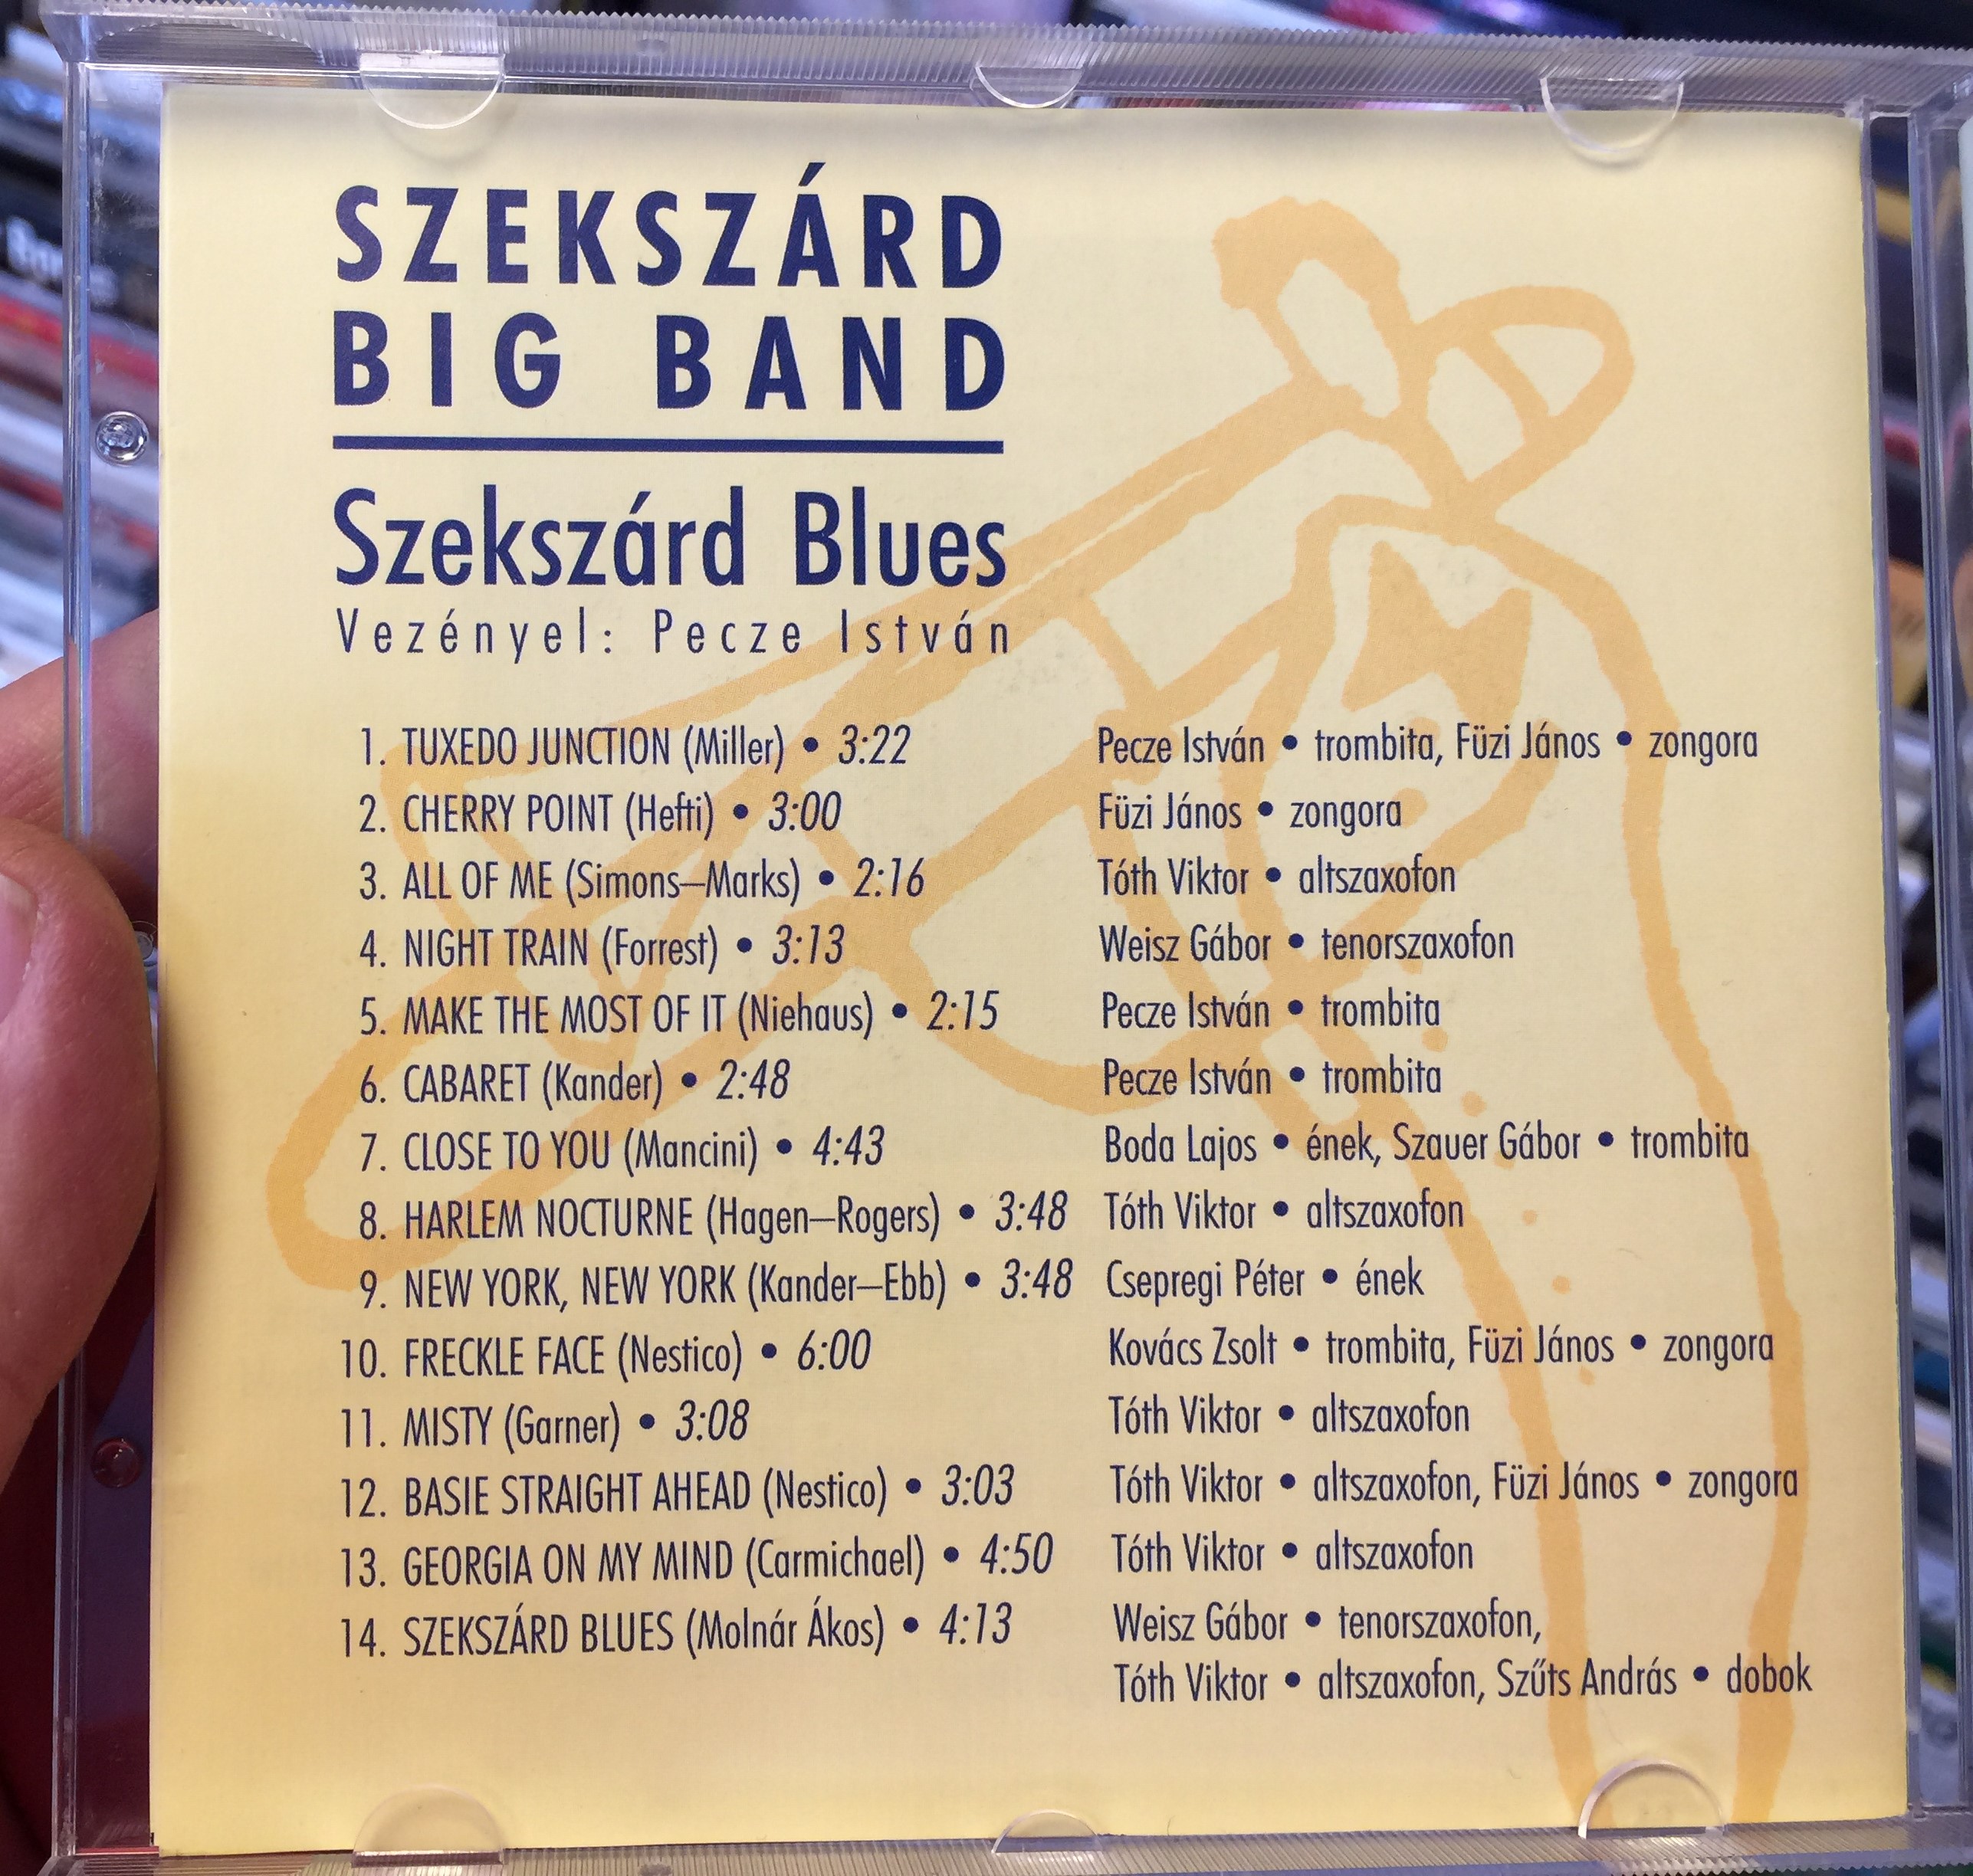 szekszard-blues-szekszard-big-band-matav-audio-cd-2-.jpg